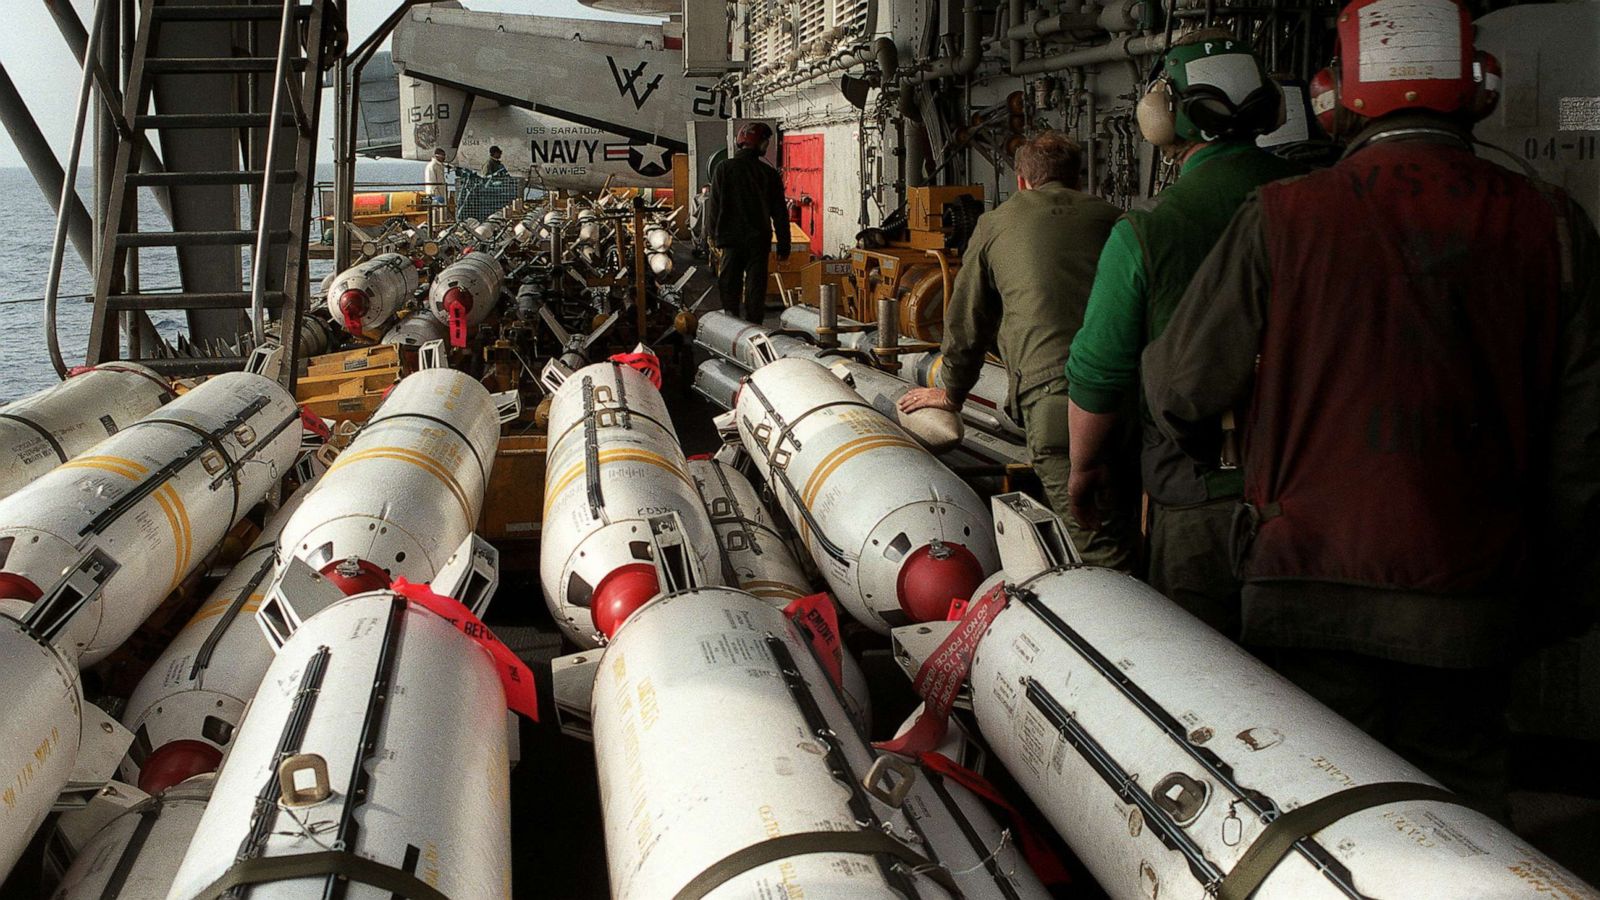 سيرجي تسيكوف يحذر من استخدام القنابل العنقودية في أوكرانيا